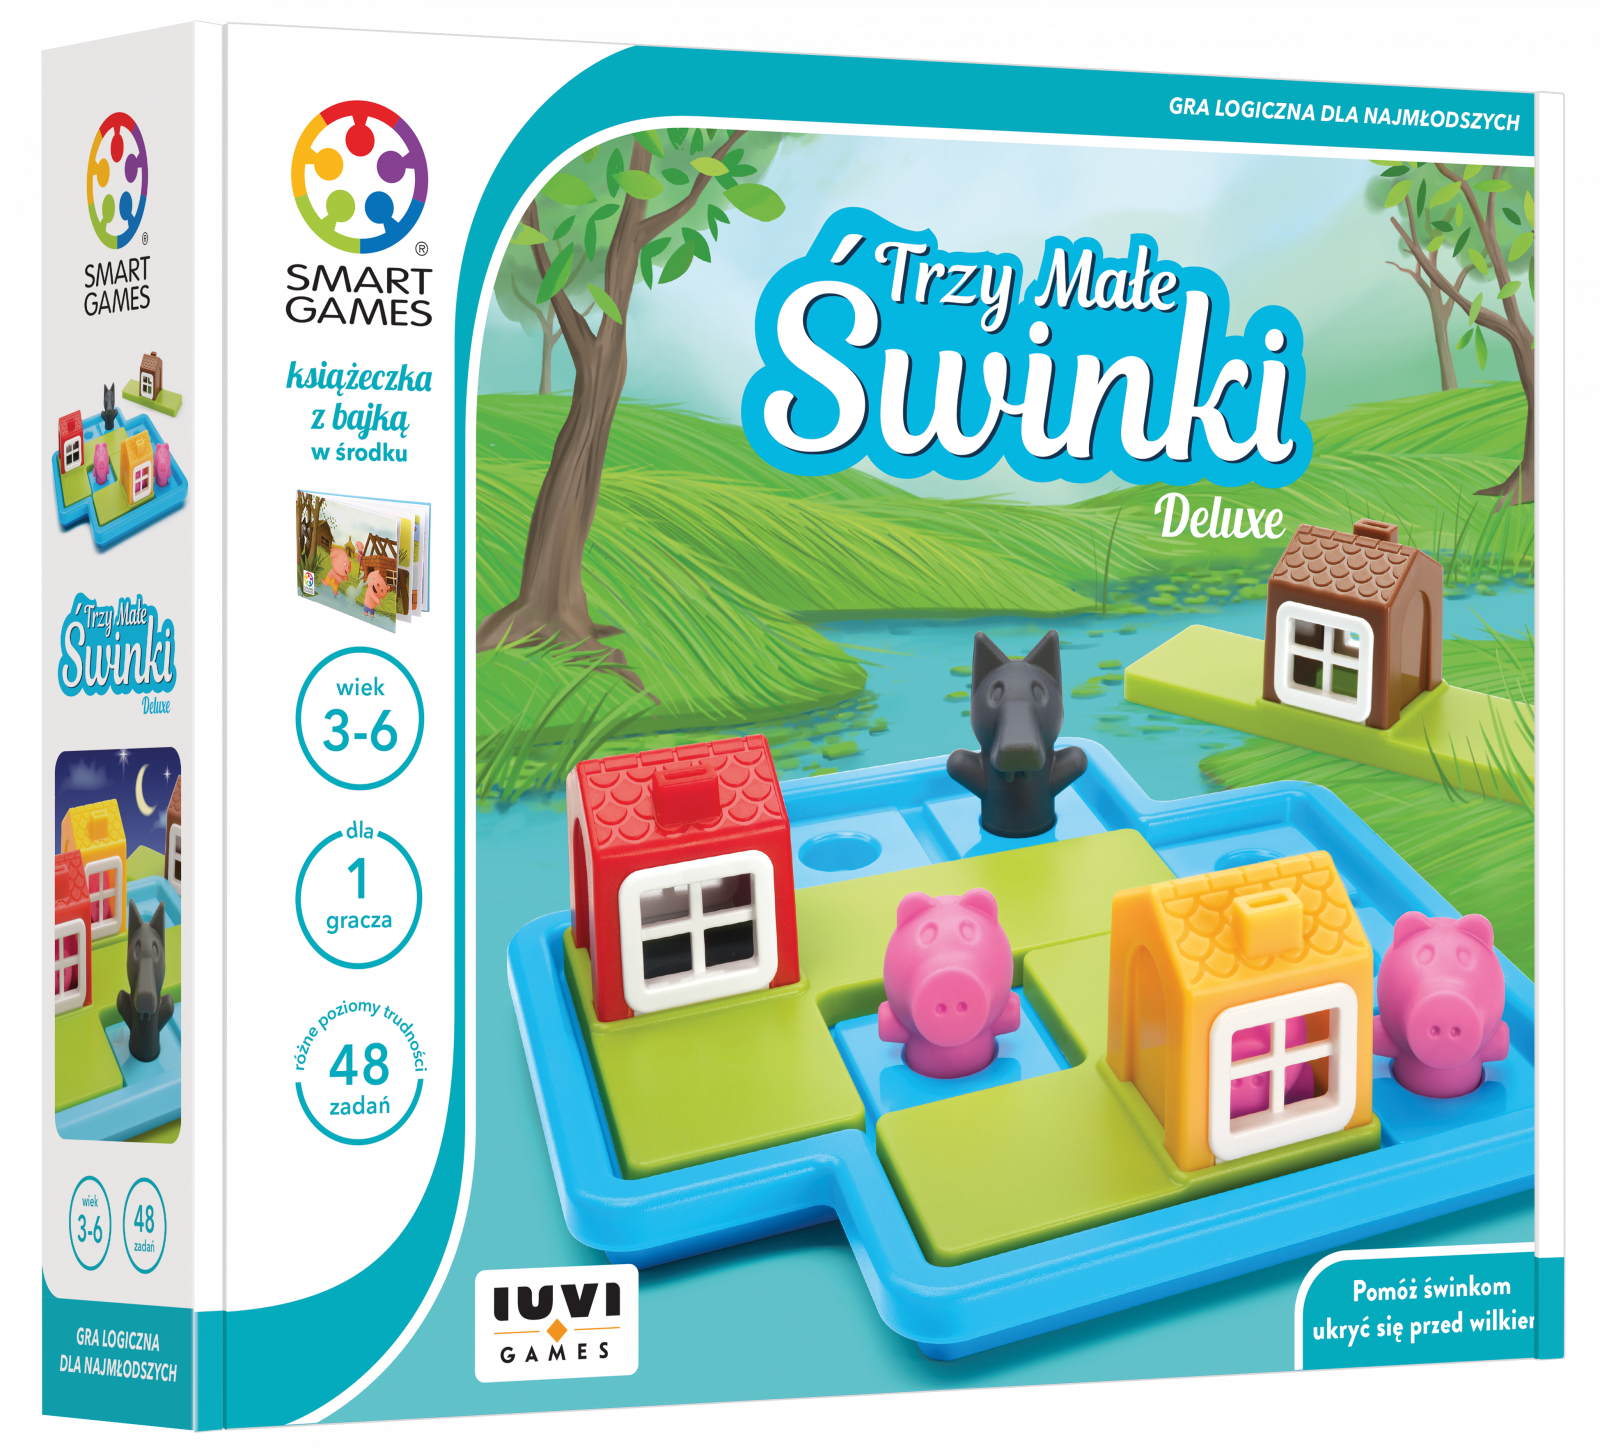 Smart Games - Trzy Małe Świnki